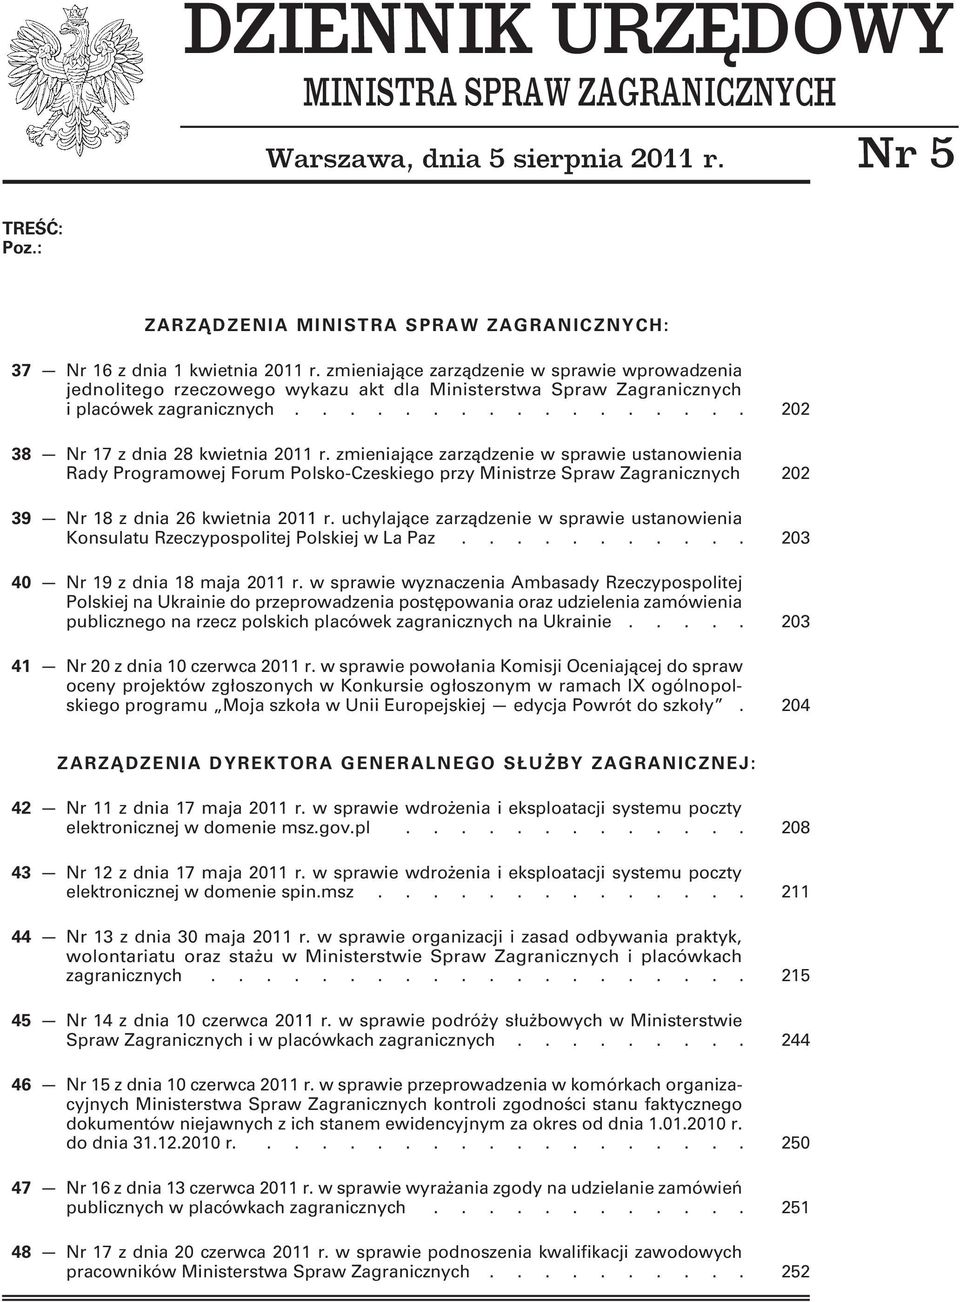 zmieniające zarządzenie w sprawie ustanowienia Rady Programowej Forum Polsko-Czeskiego przy Ministrze Spraw Zagranicznych 202 39 Nr 18 z dnia 26 kwietnia 2011 r.